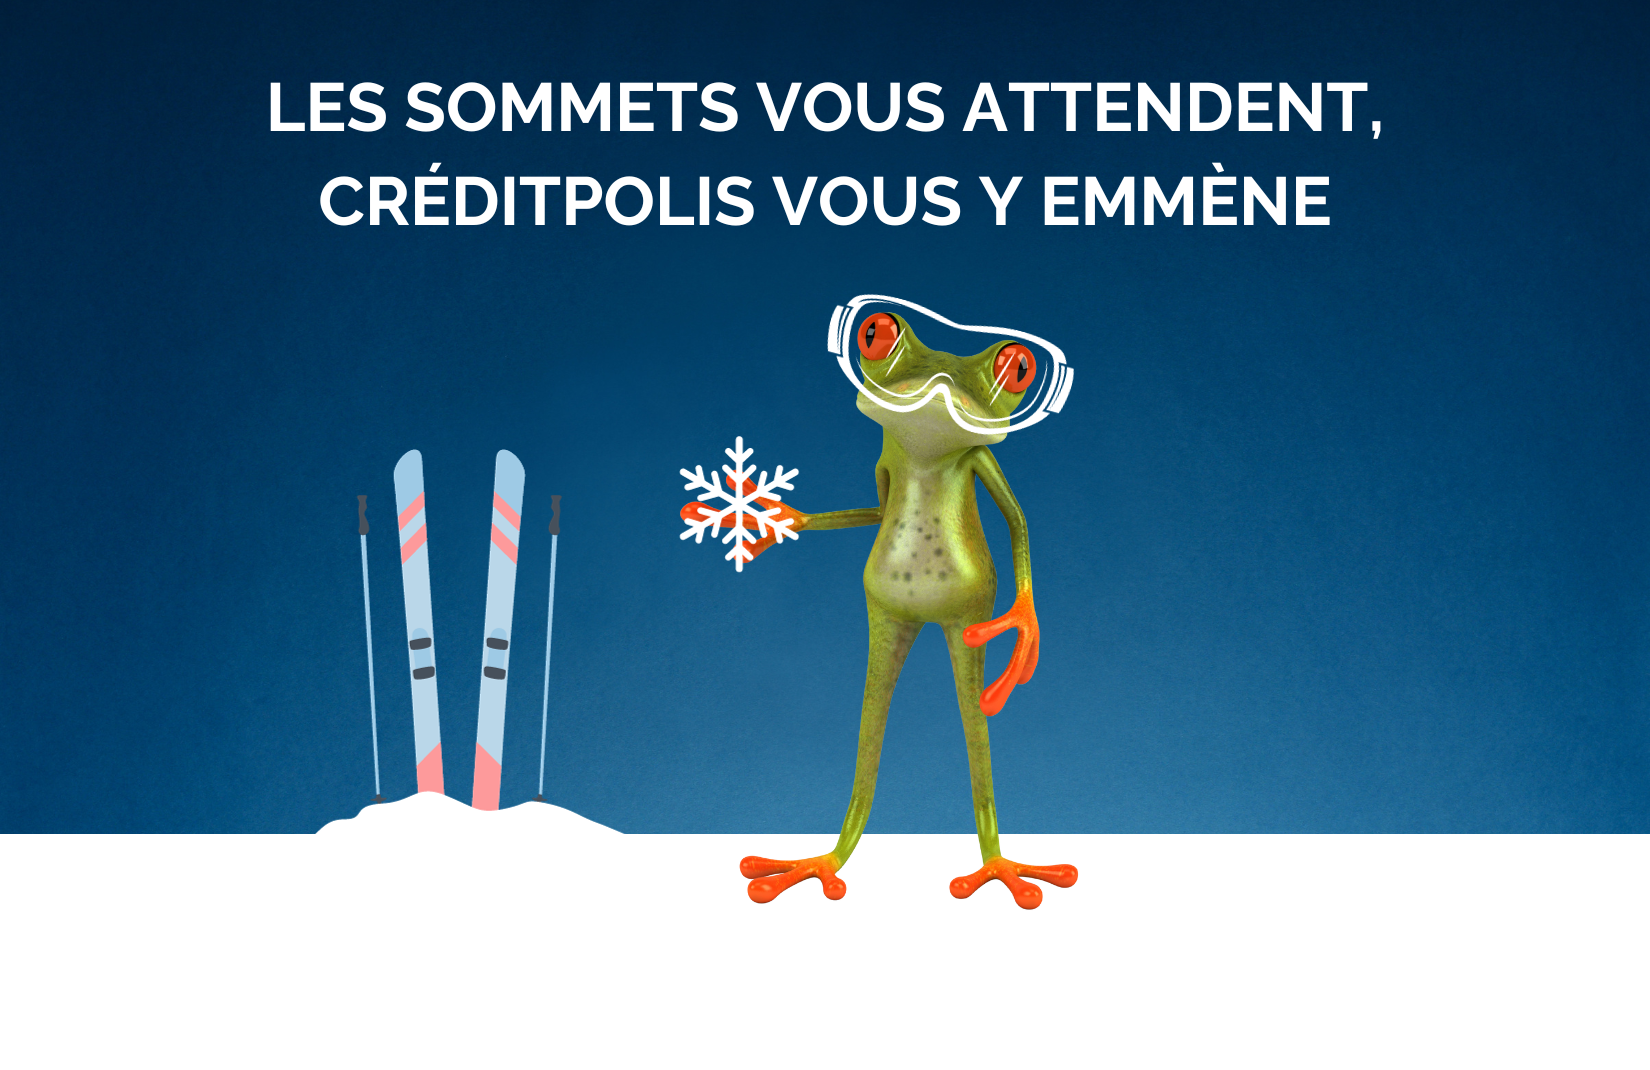 Crédit vacances au ski